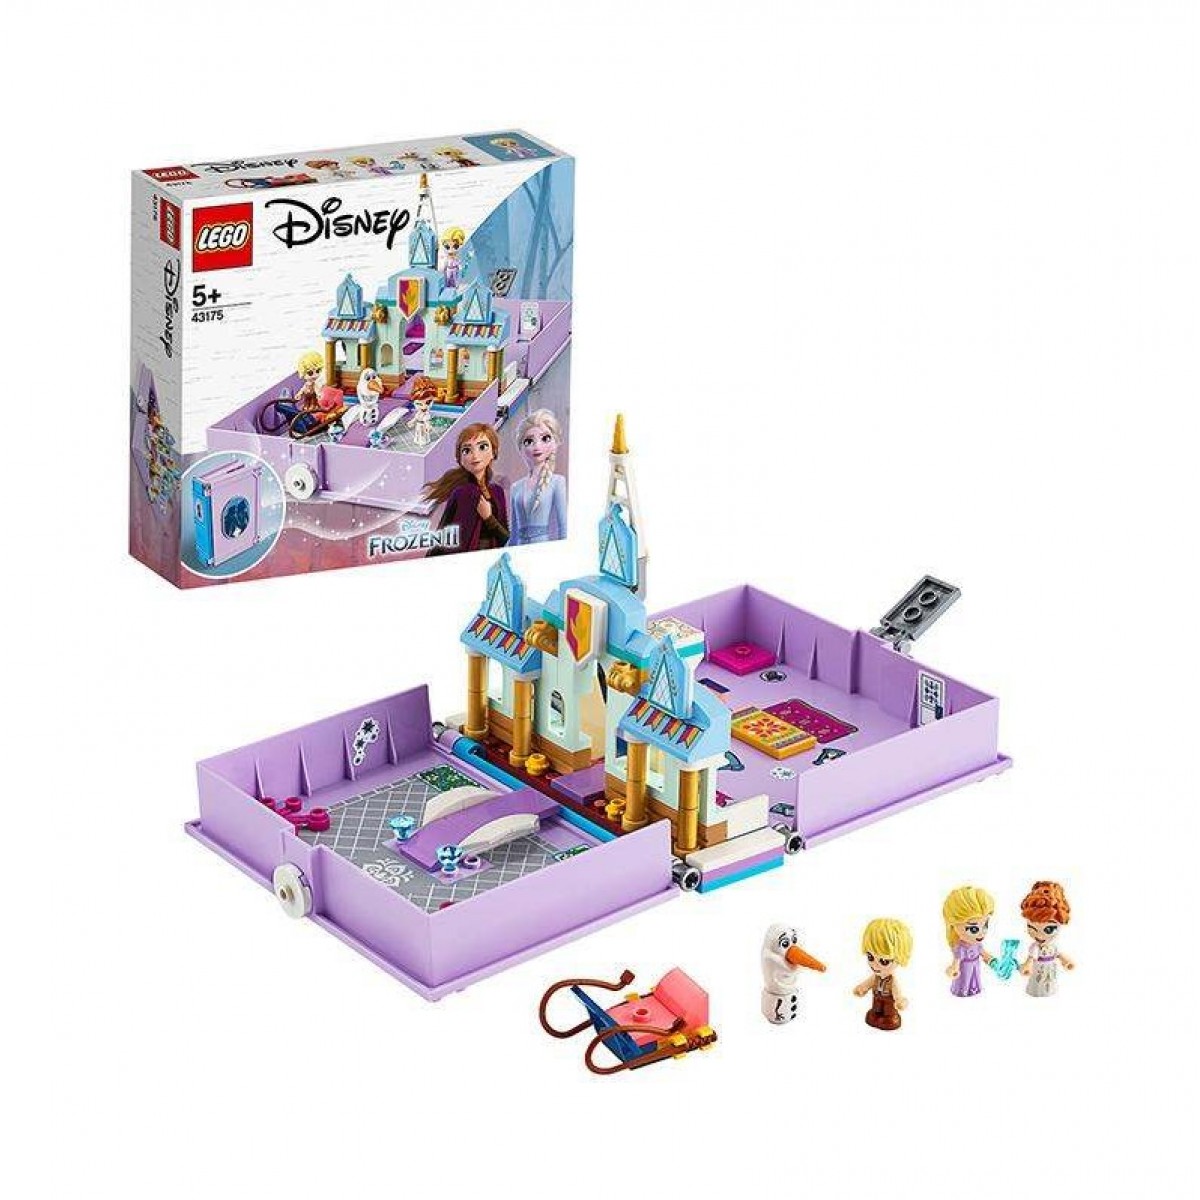 LEGO樂高迪士尼系列 安娜和艾莎的故事書大冒險43175拼插積木玩具